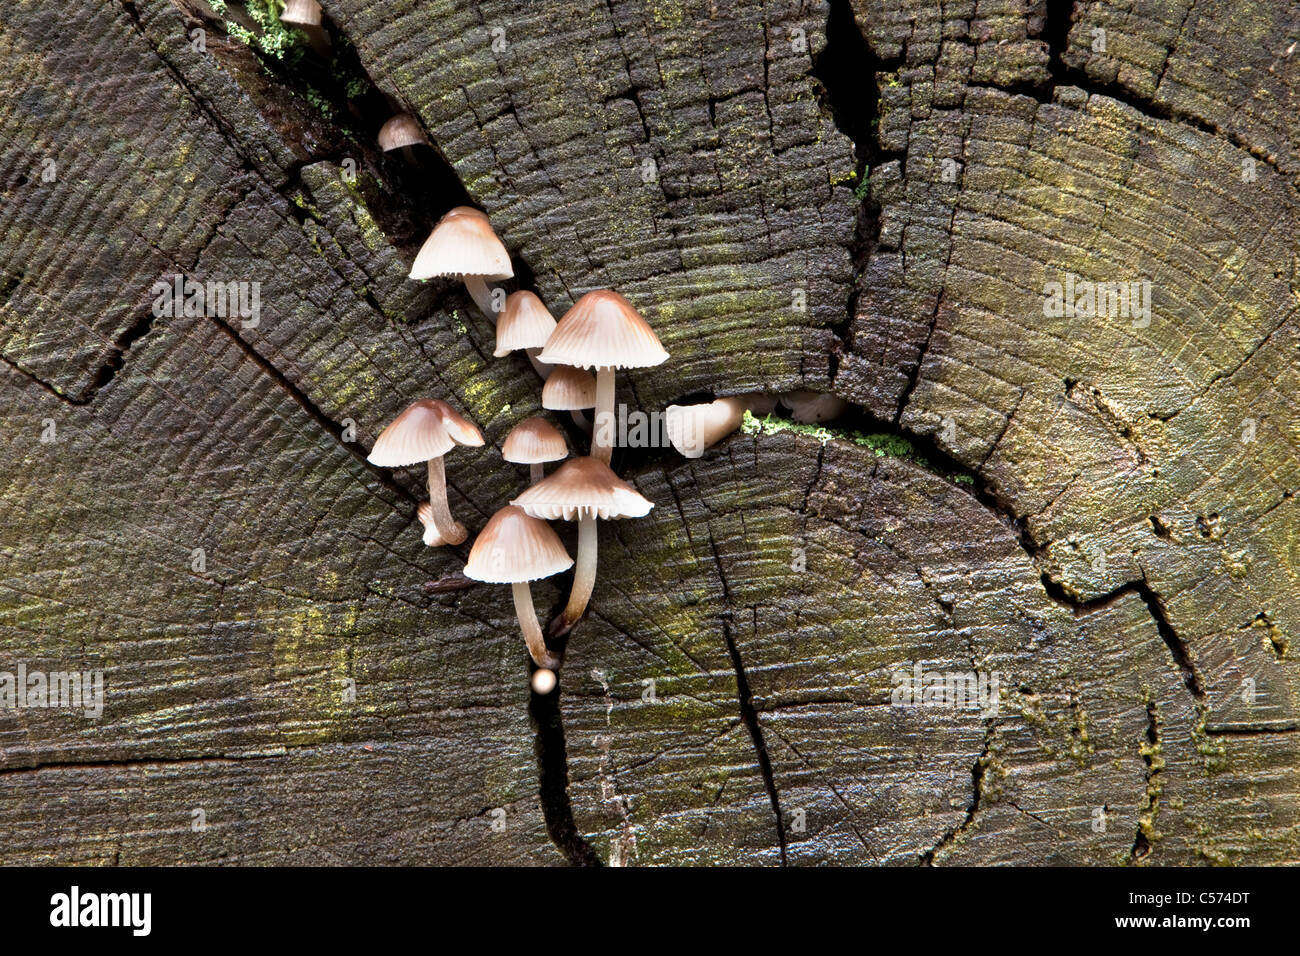 The Netherlands, Denekamp, Estate Singraven. Autumn. Fungus on beech tree trunk Stock Photo